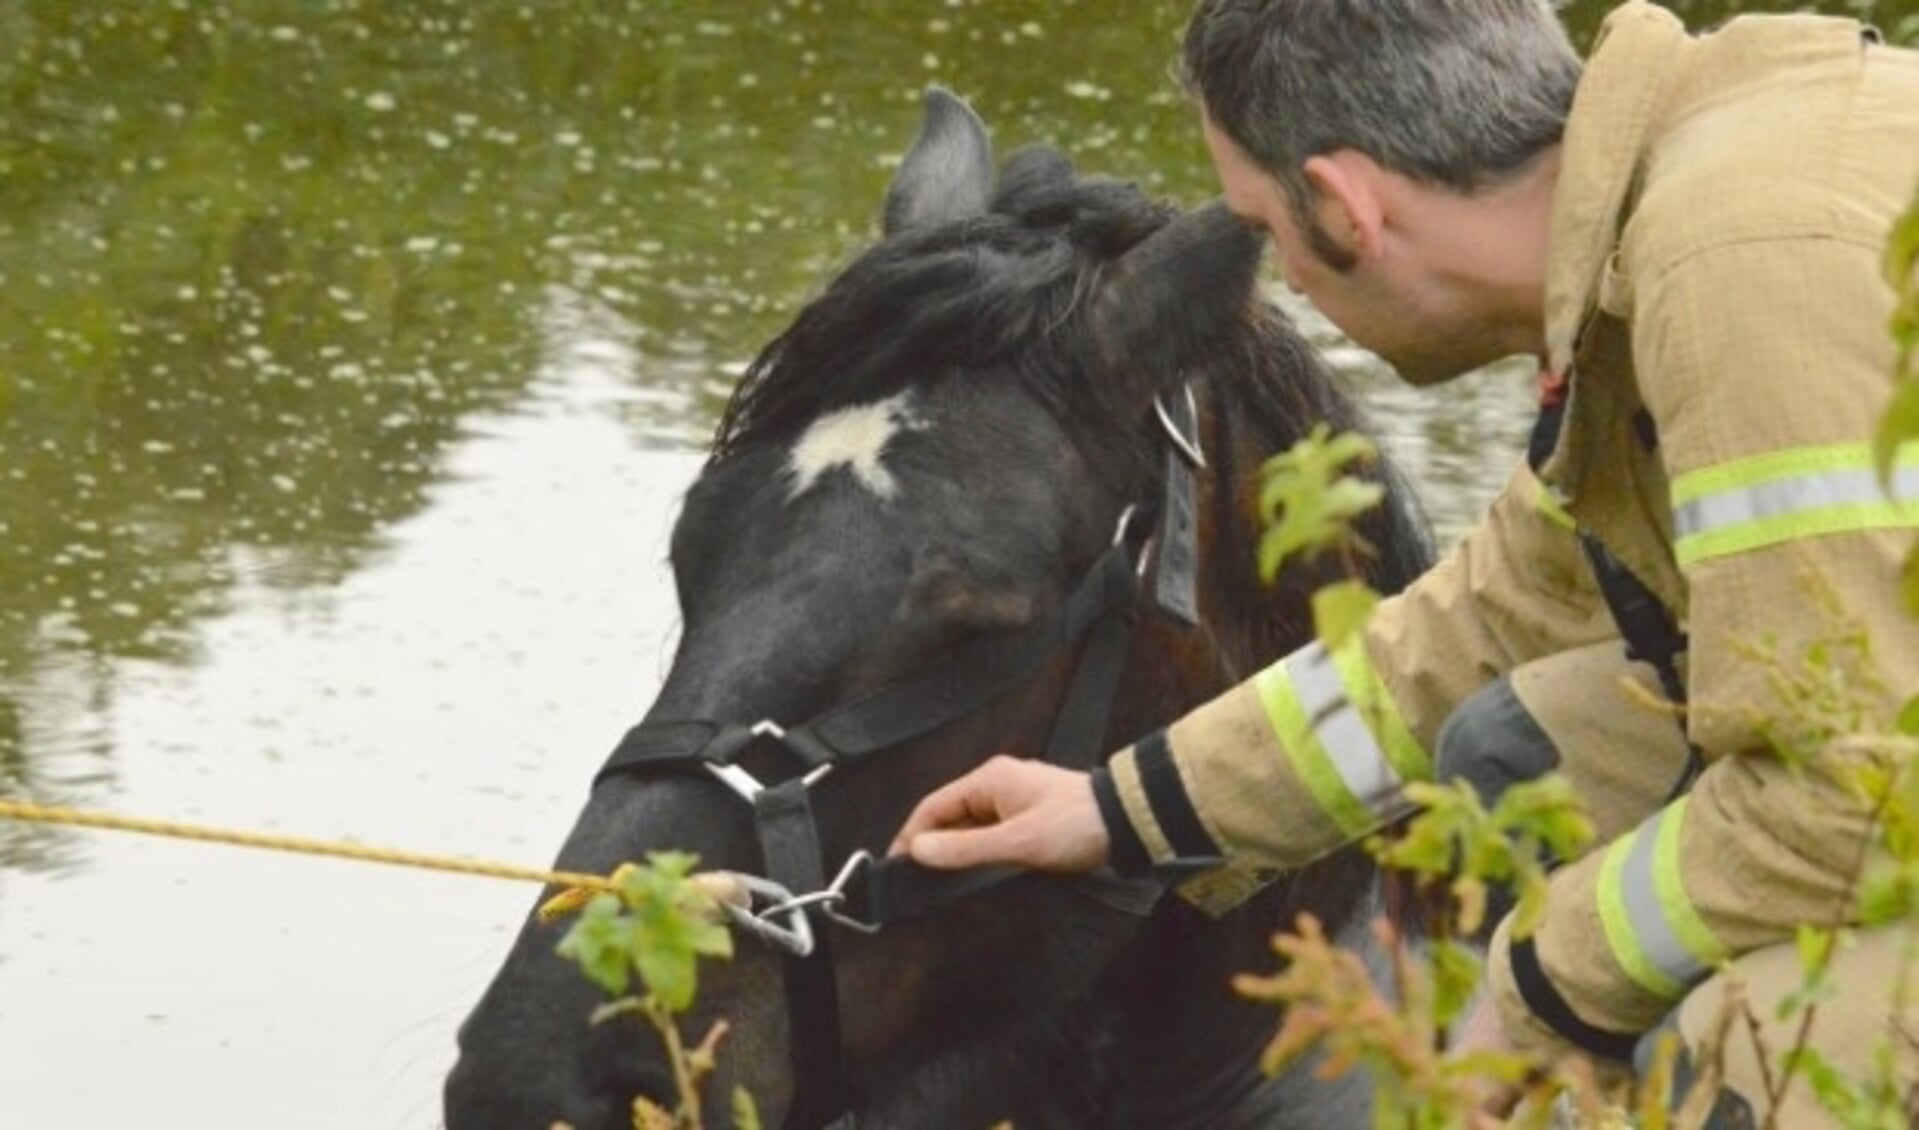 De brandweer moest eraan te pas komen om een paard uit de sloot te redden. 